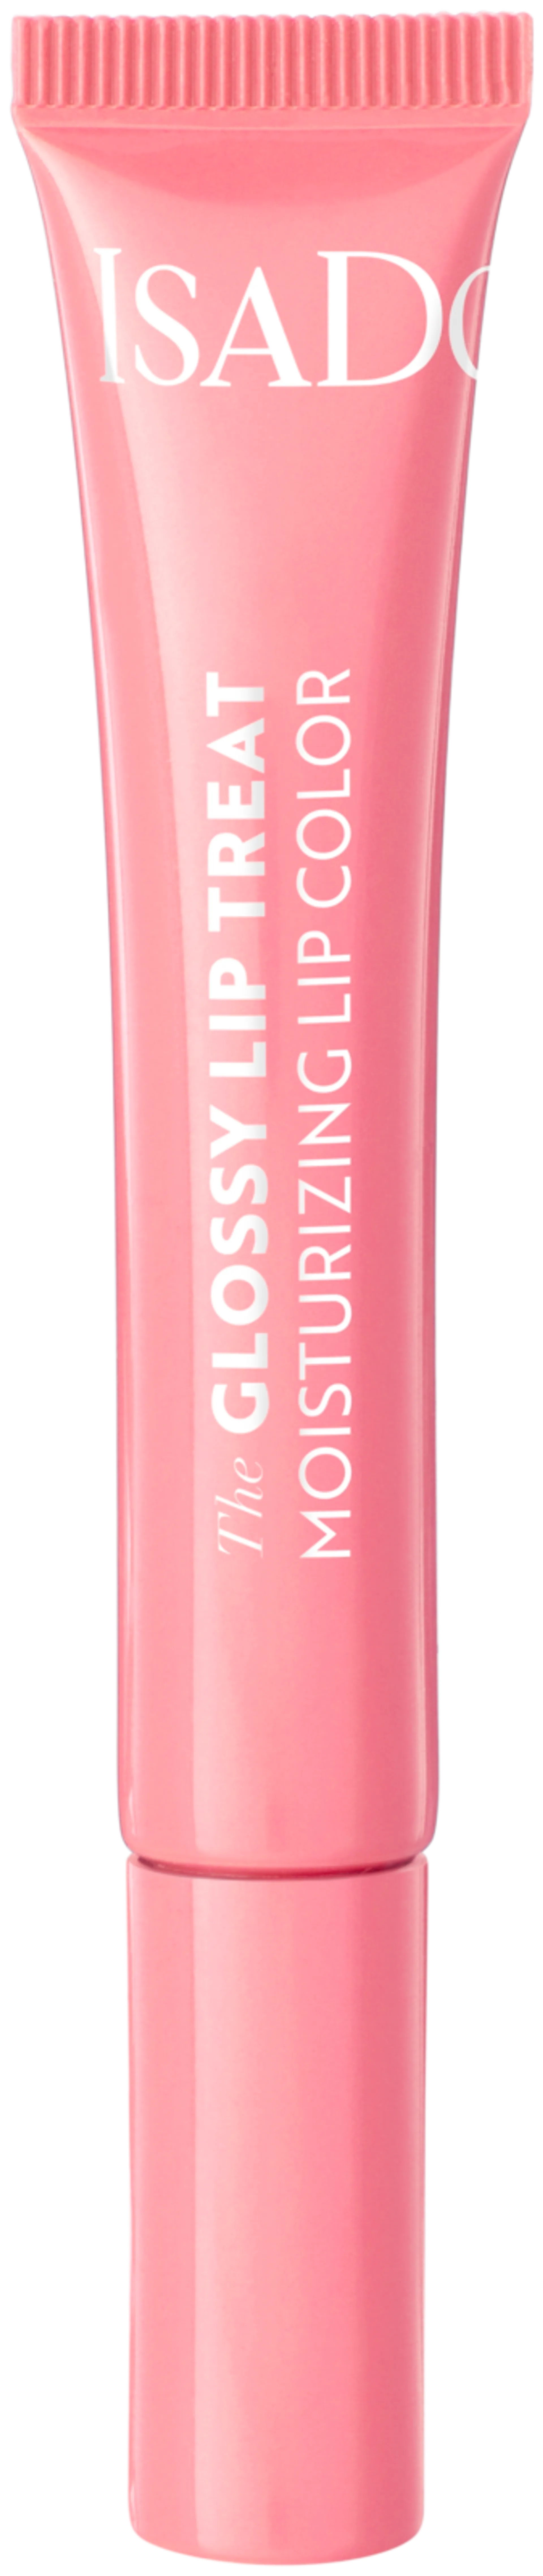 IsaDora Glossy Lip Treat - 2